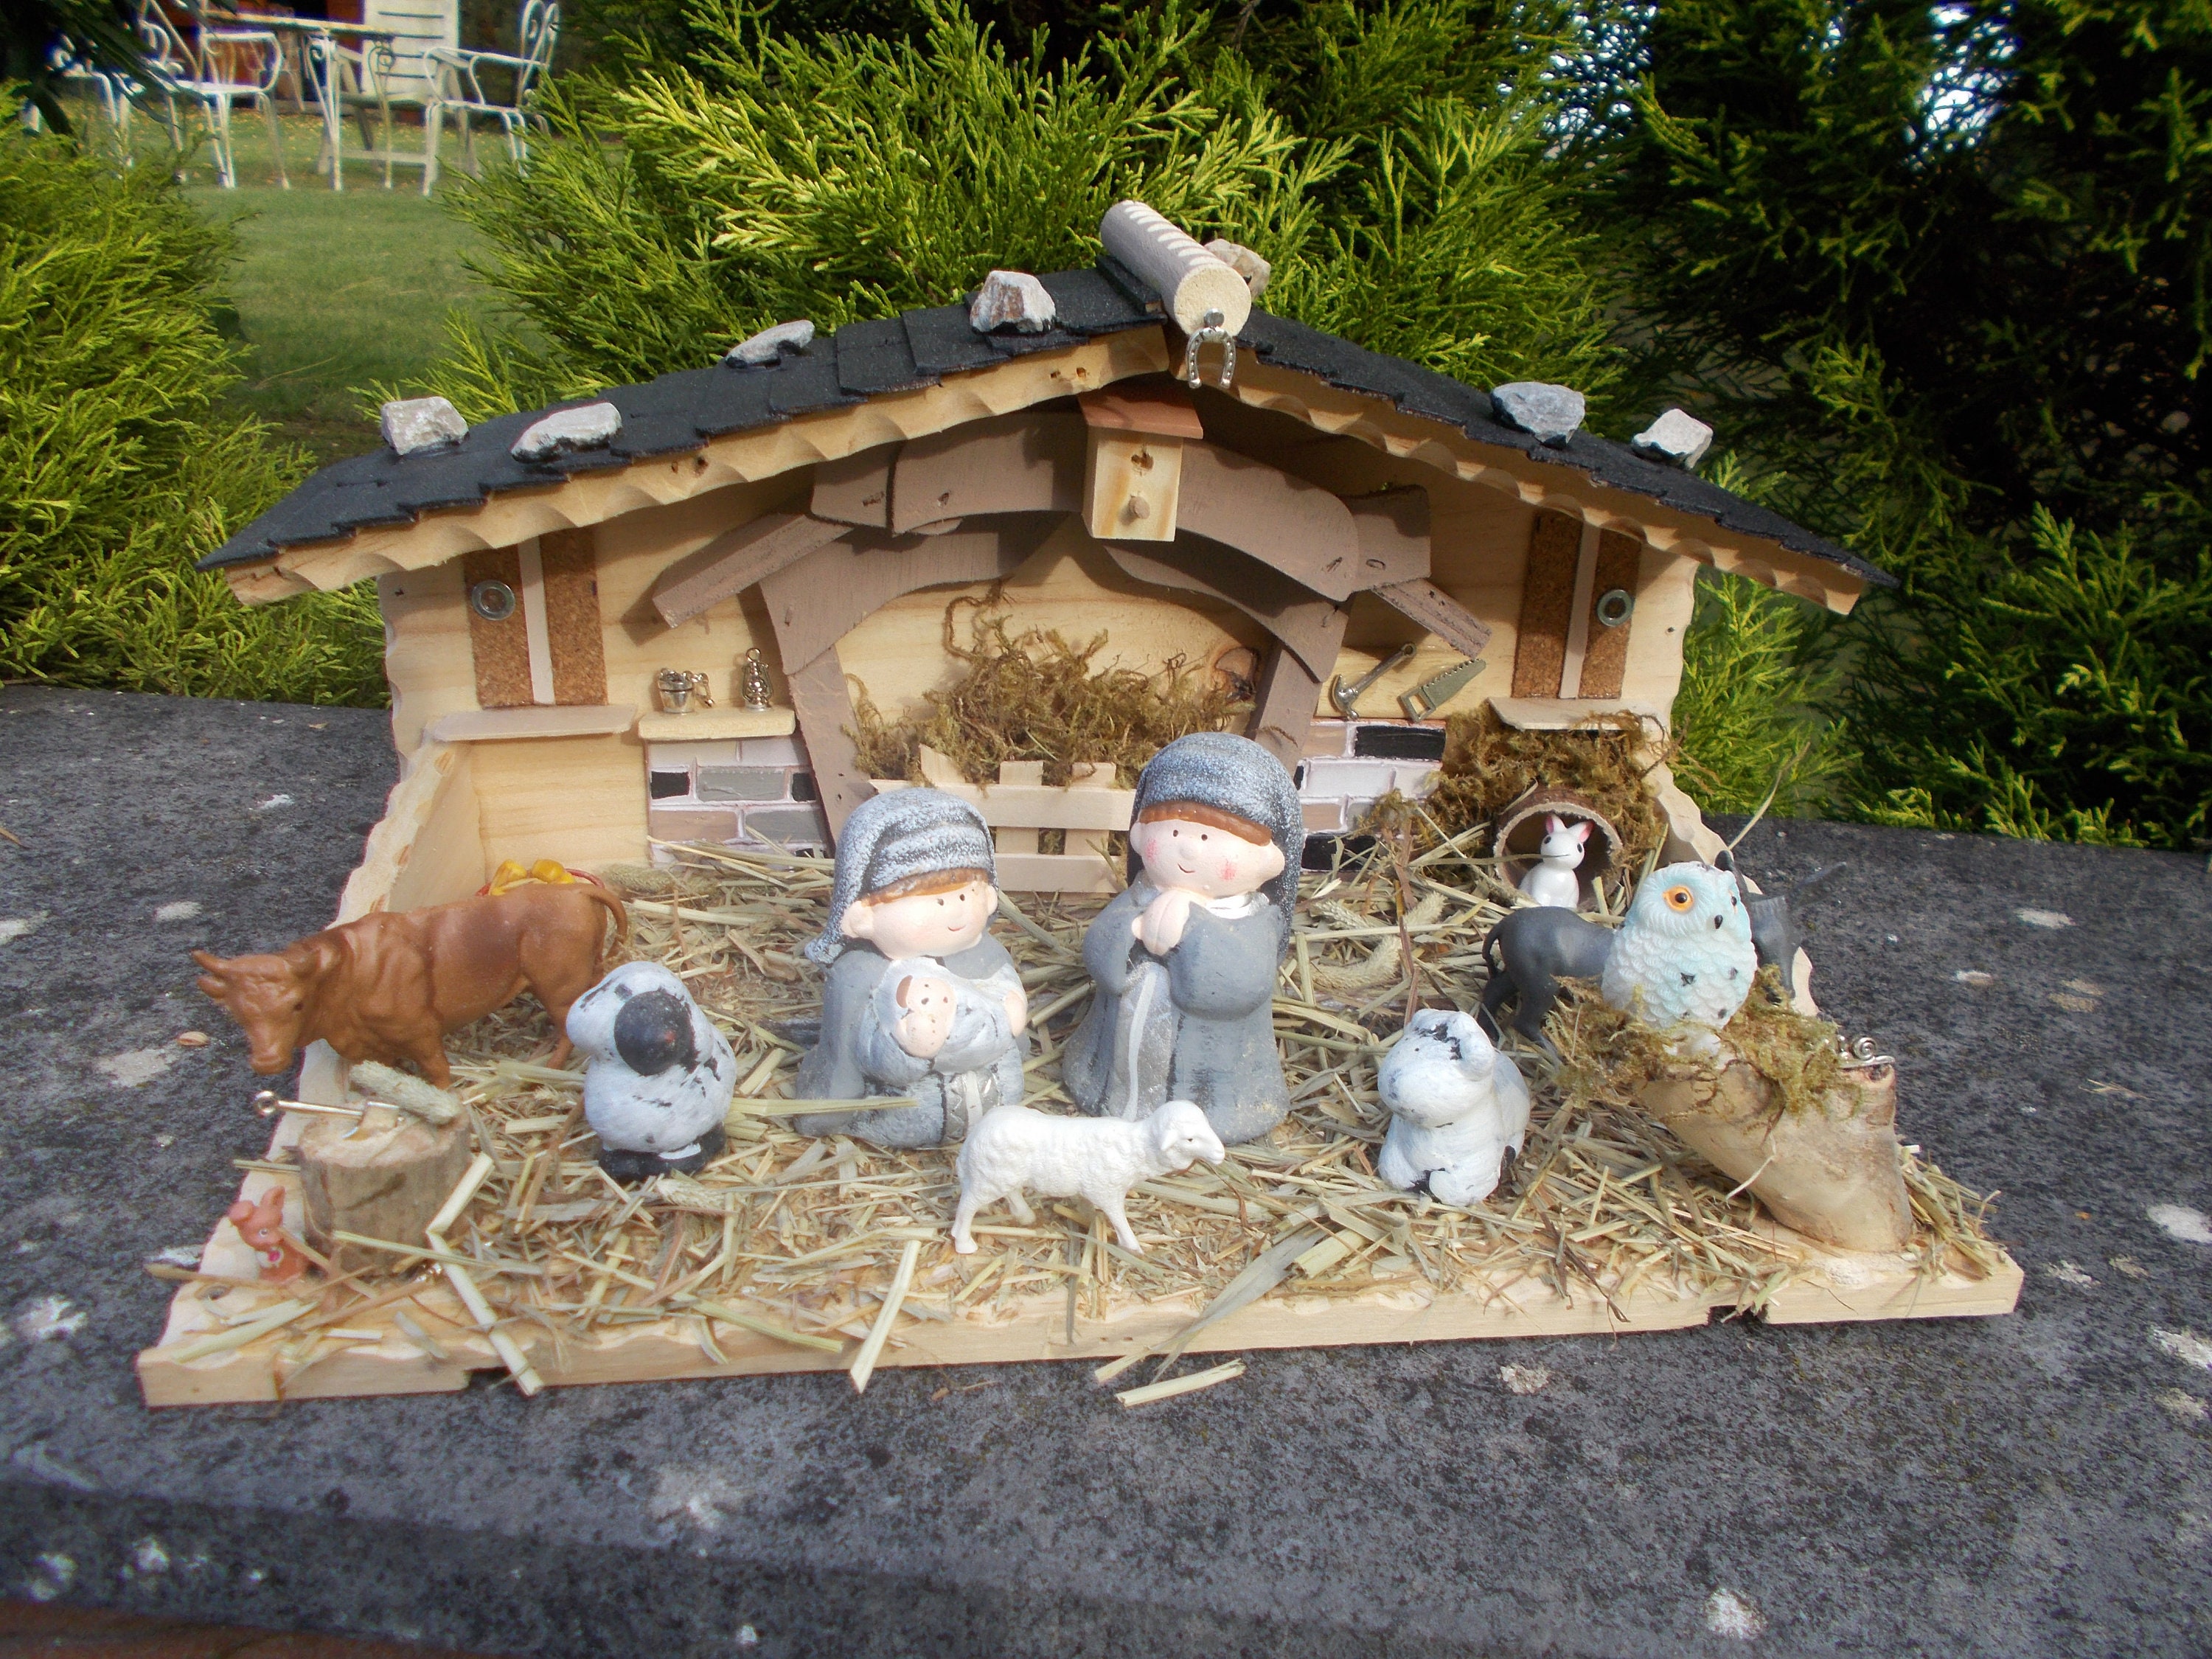 Sapin lumineux Led avec personnages crèche de Noël en bois ciselé